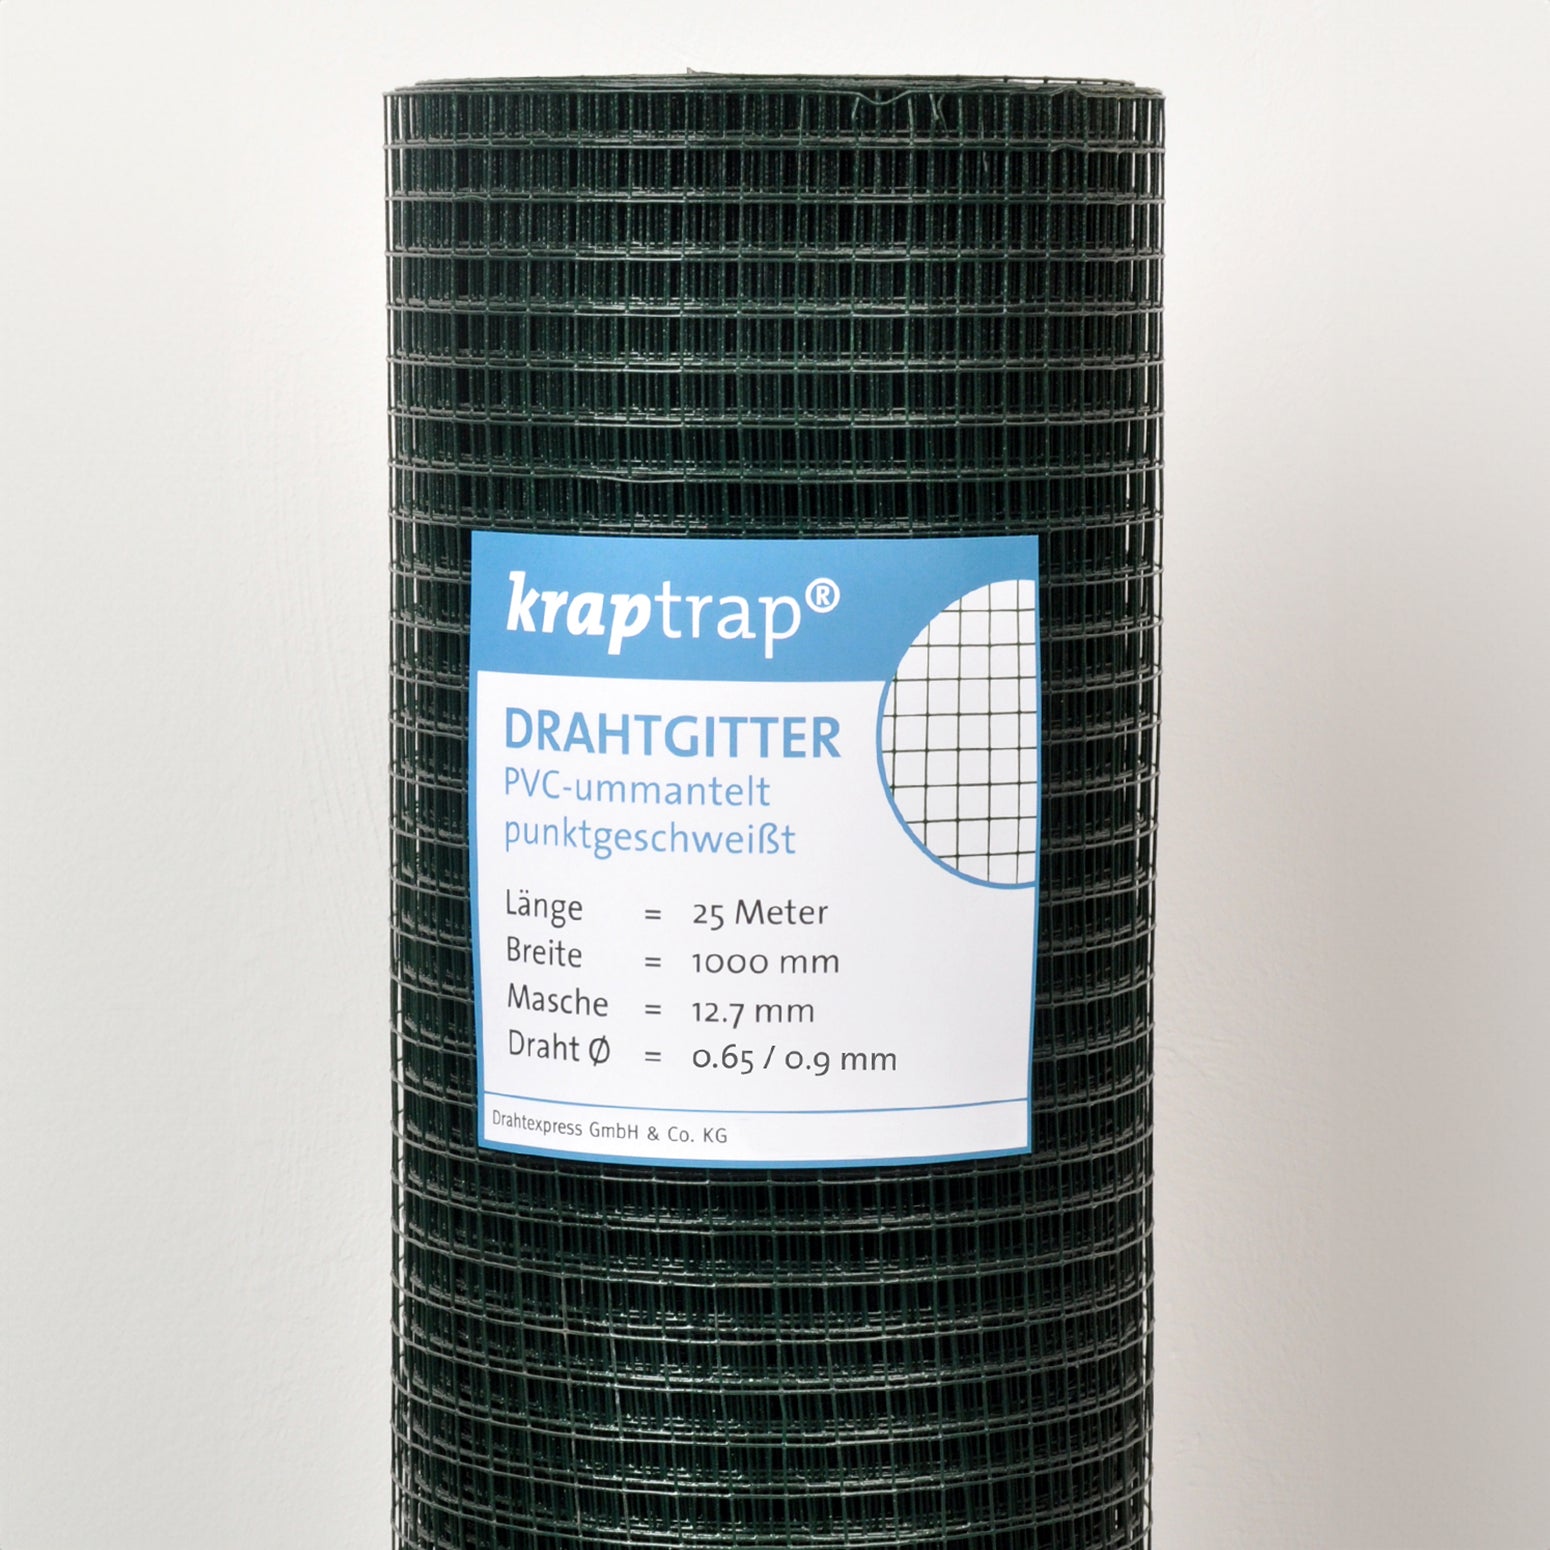 Kraptrap® Volierendraht Drahtgitter 12,7 mm Masche, grün ummantelt verzinkt